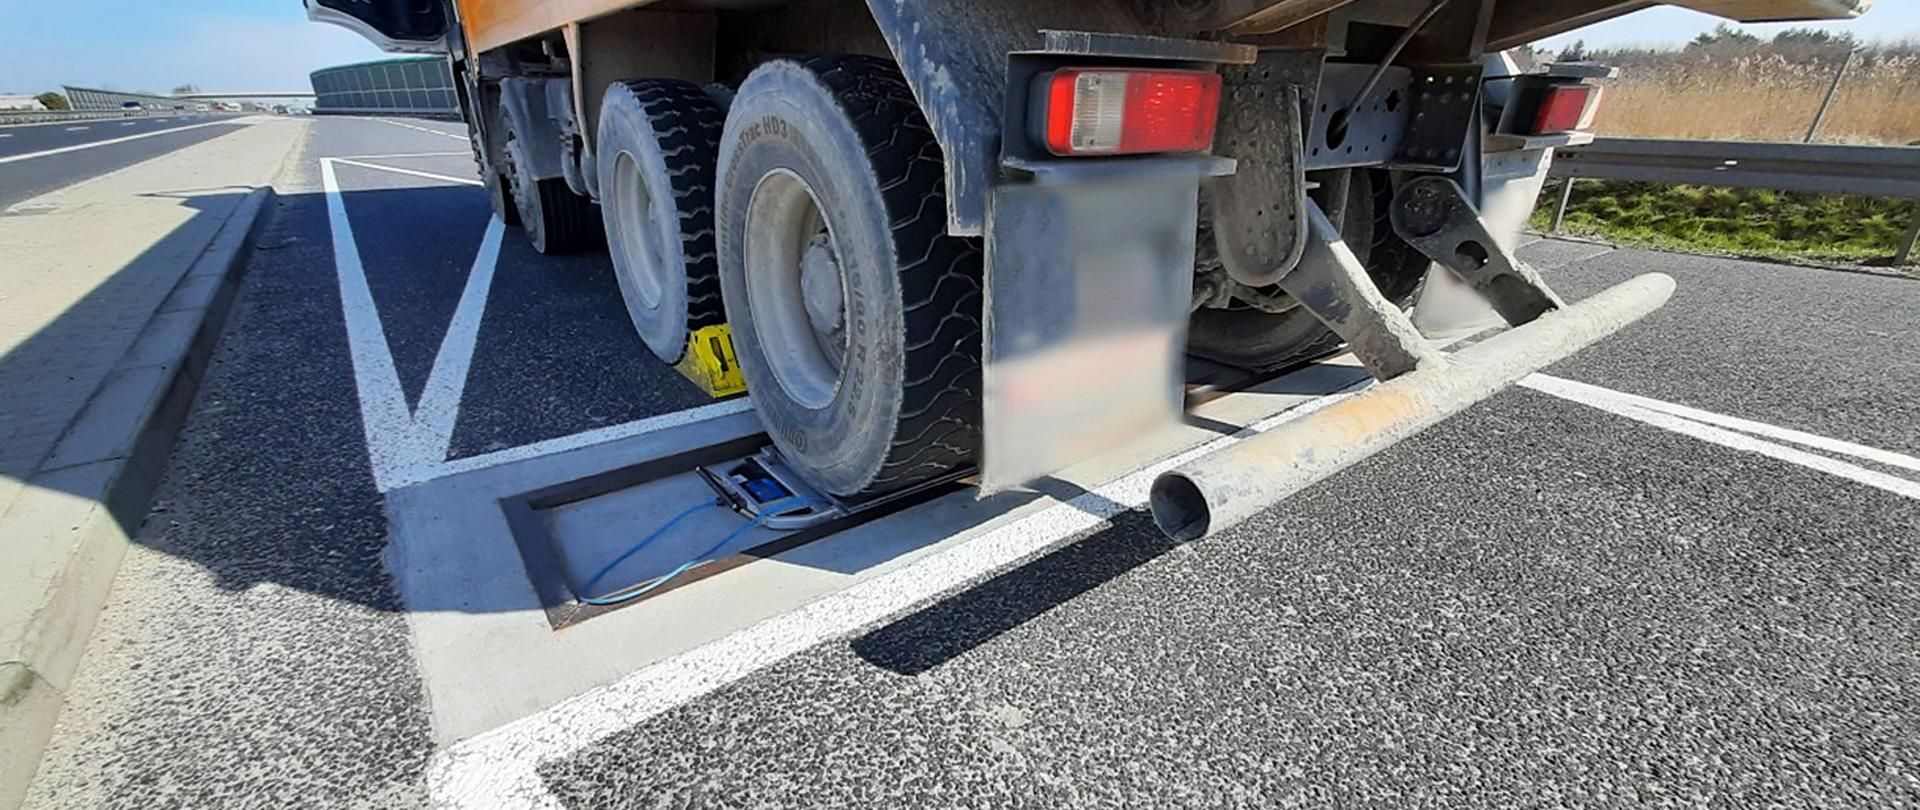 Tonaż ciężarówki zatrzymanej przez inspektorów mazowieckiej ITD sprawdzany na inspekcyjnych wagach
